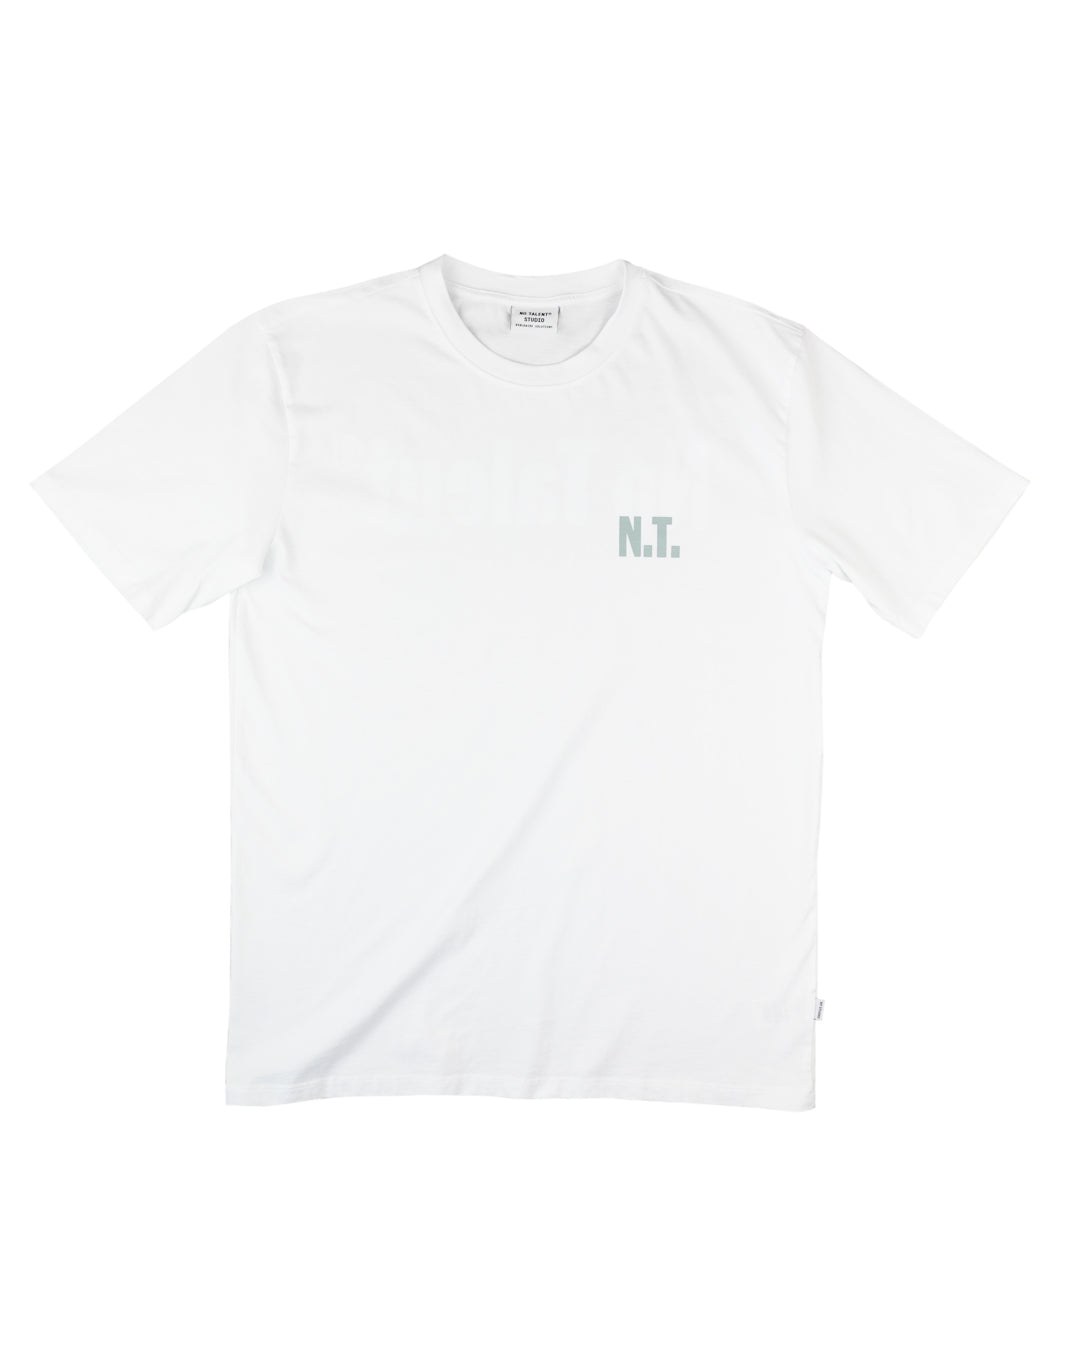 No Talent Studio "NT Represent White T-Shirt“